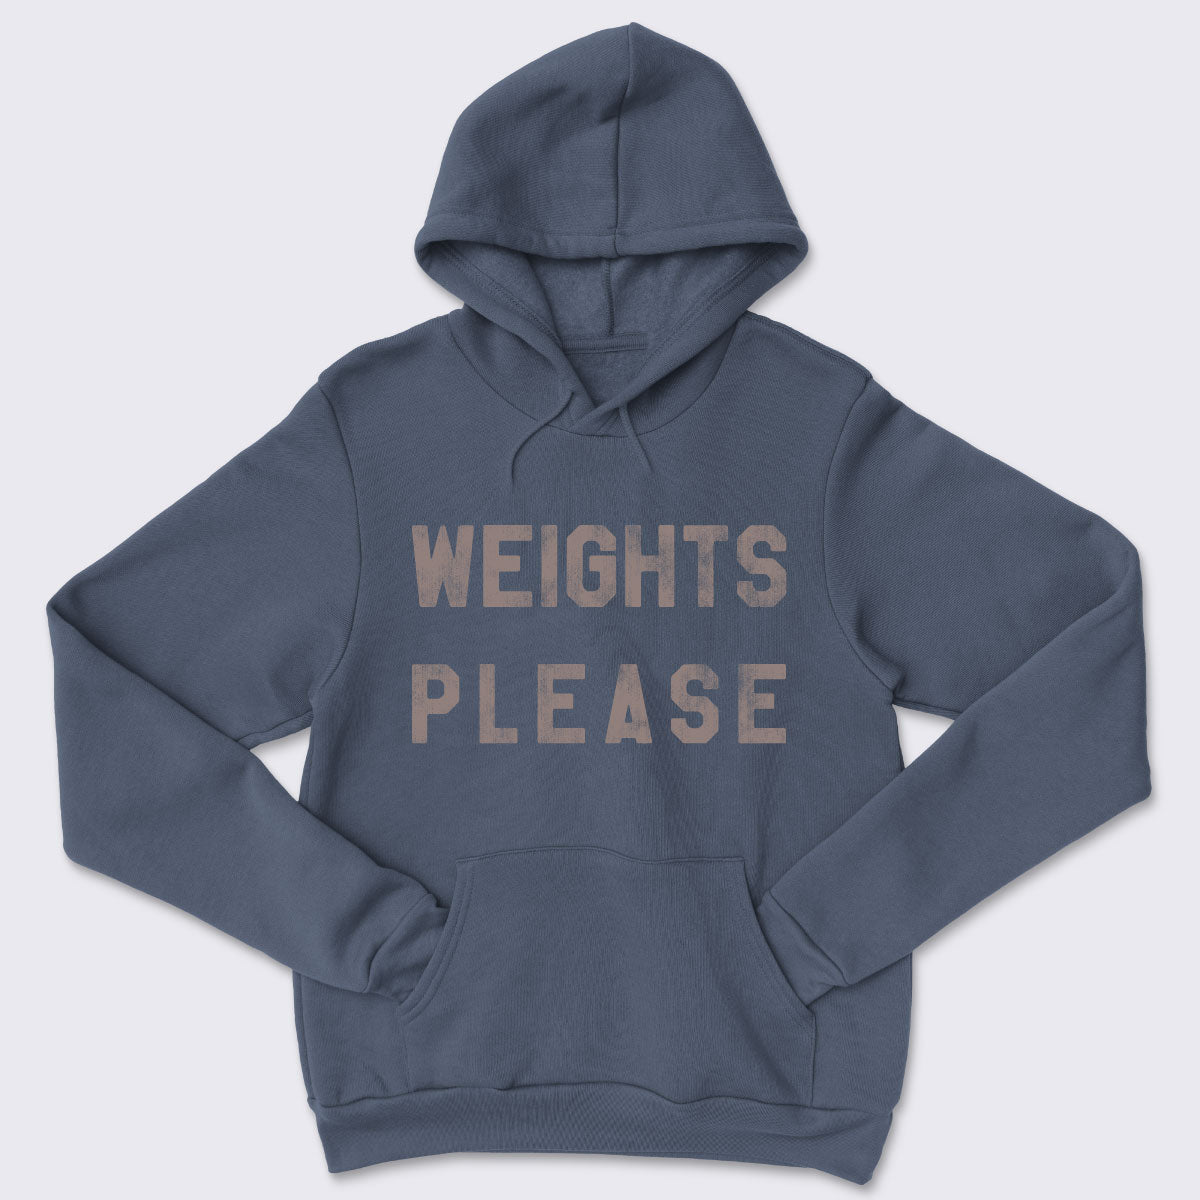 Weights Please Core Fleece Pullover Hooded Sweatshirt